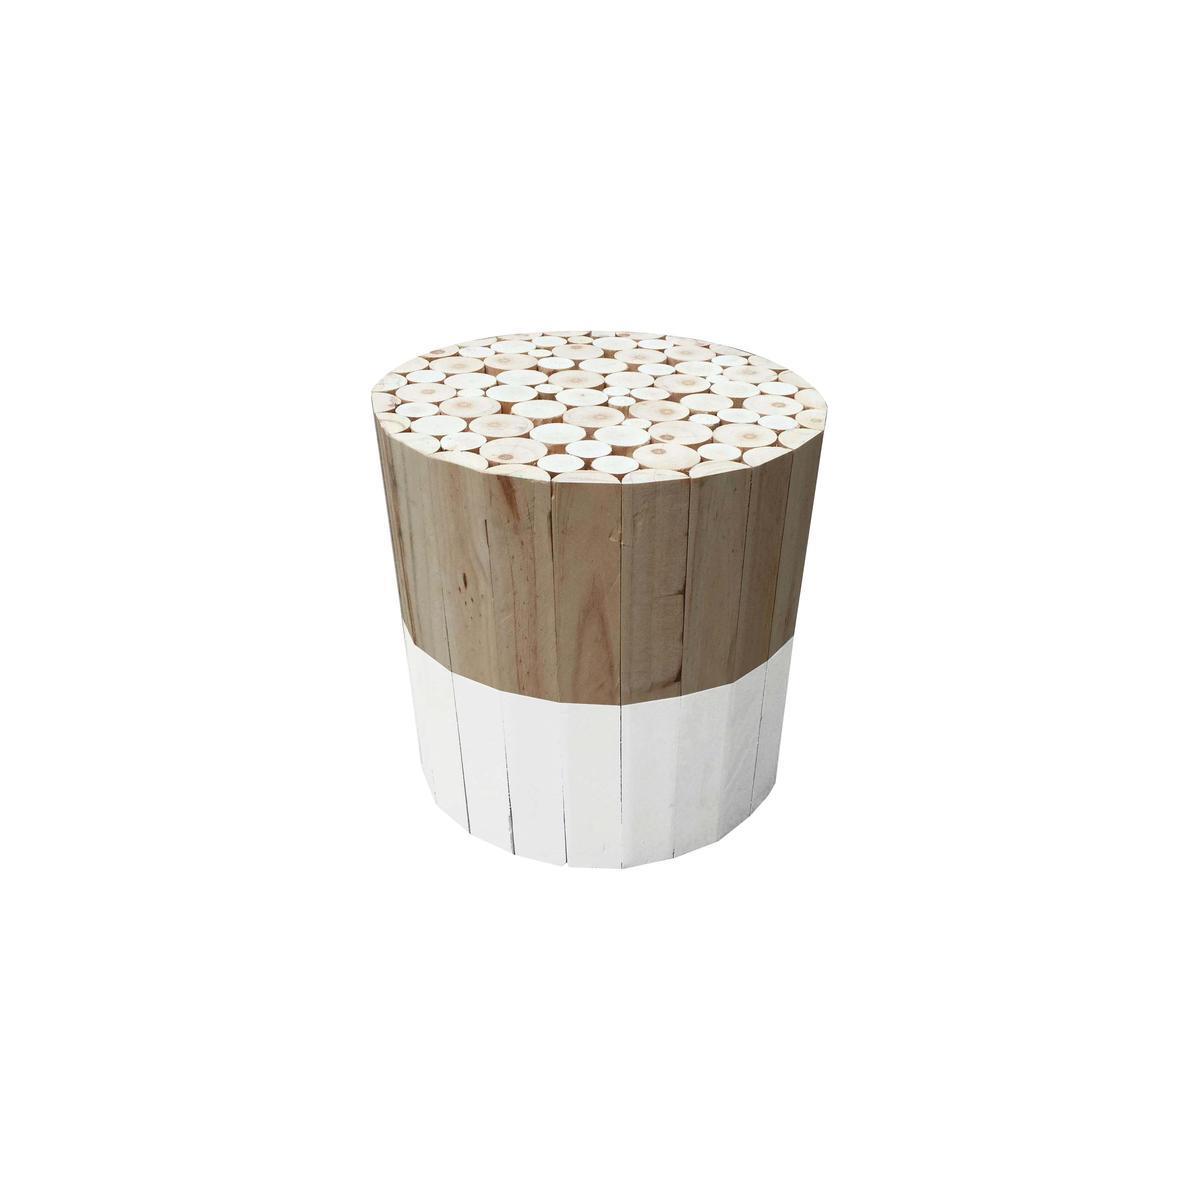 Tabouret rond en bois bicolore - Différents modèles - ø 30 x H 30 cm - Blanc, beige - HOME DECO FACTORY